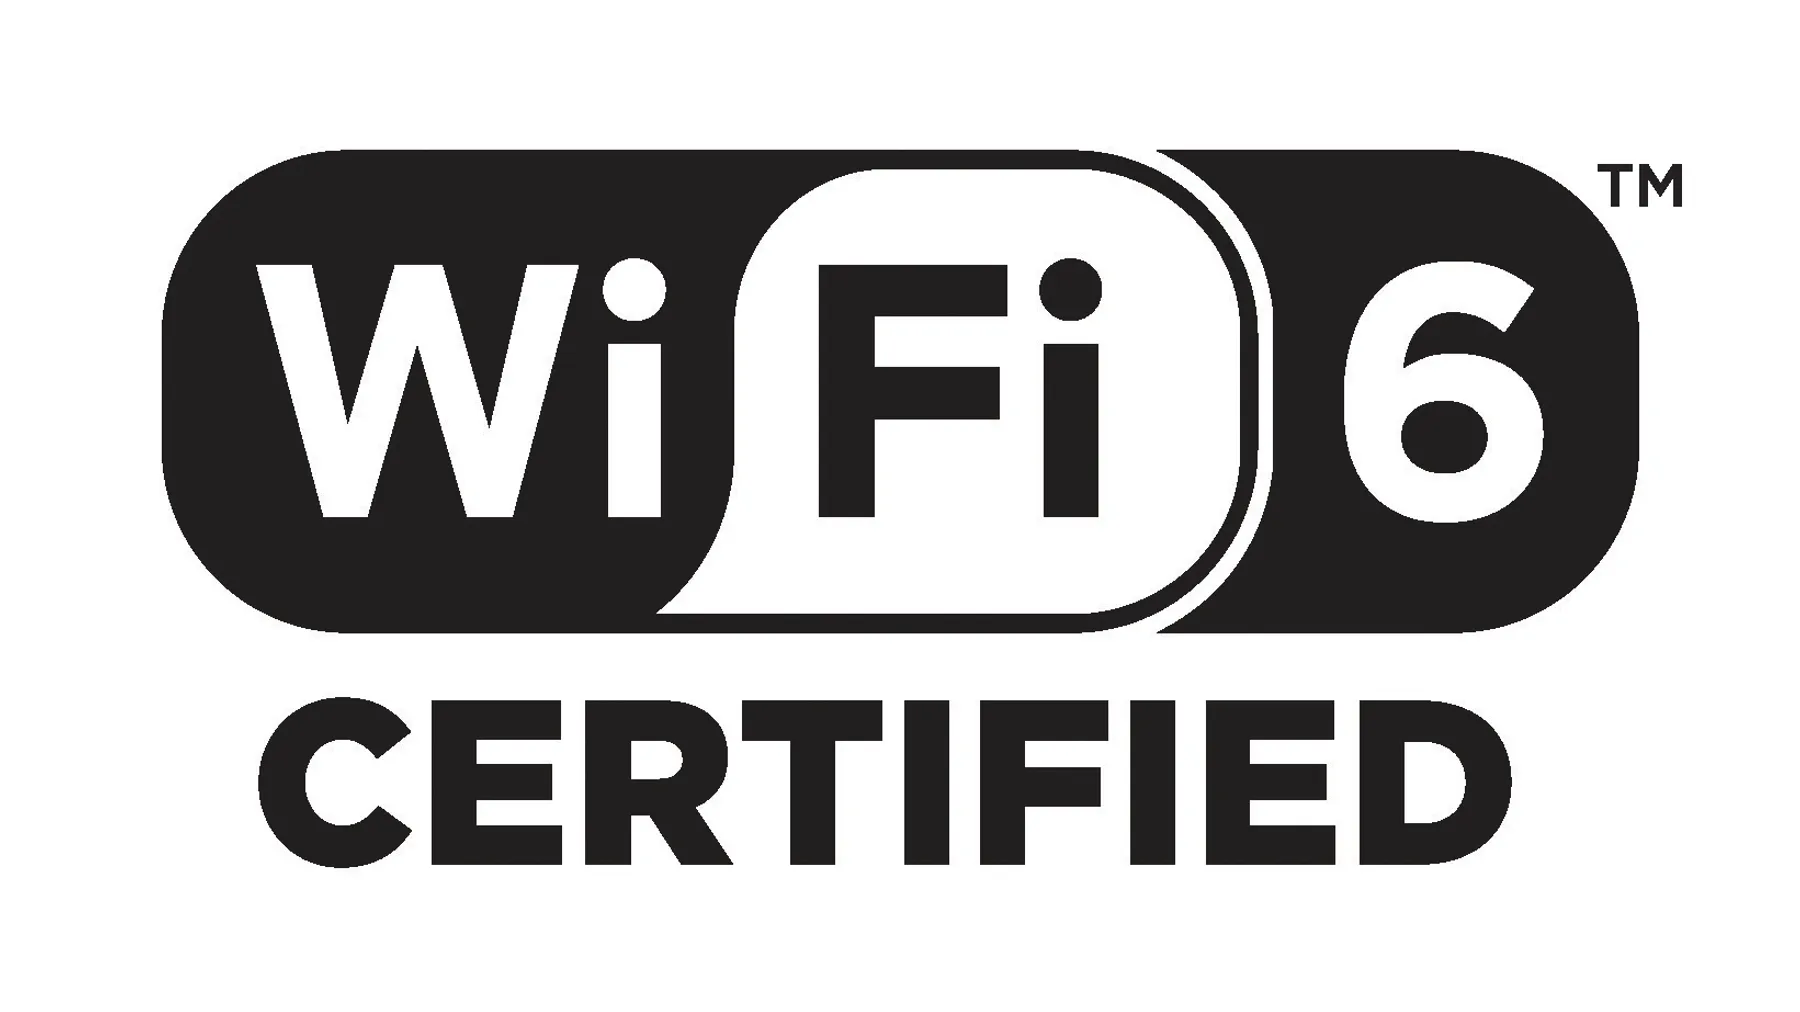 Standard Wi-Fi 6 je až o 37 % rychlejší než předchozí generace Wi-Fi 5.